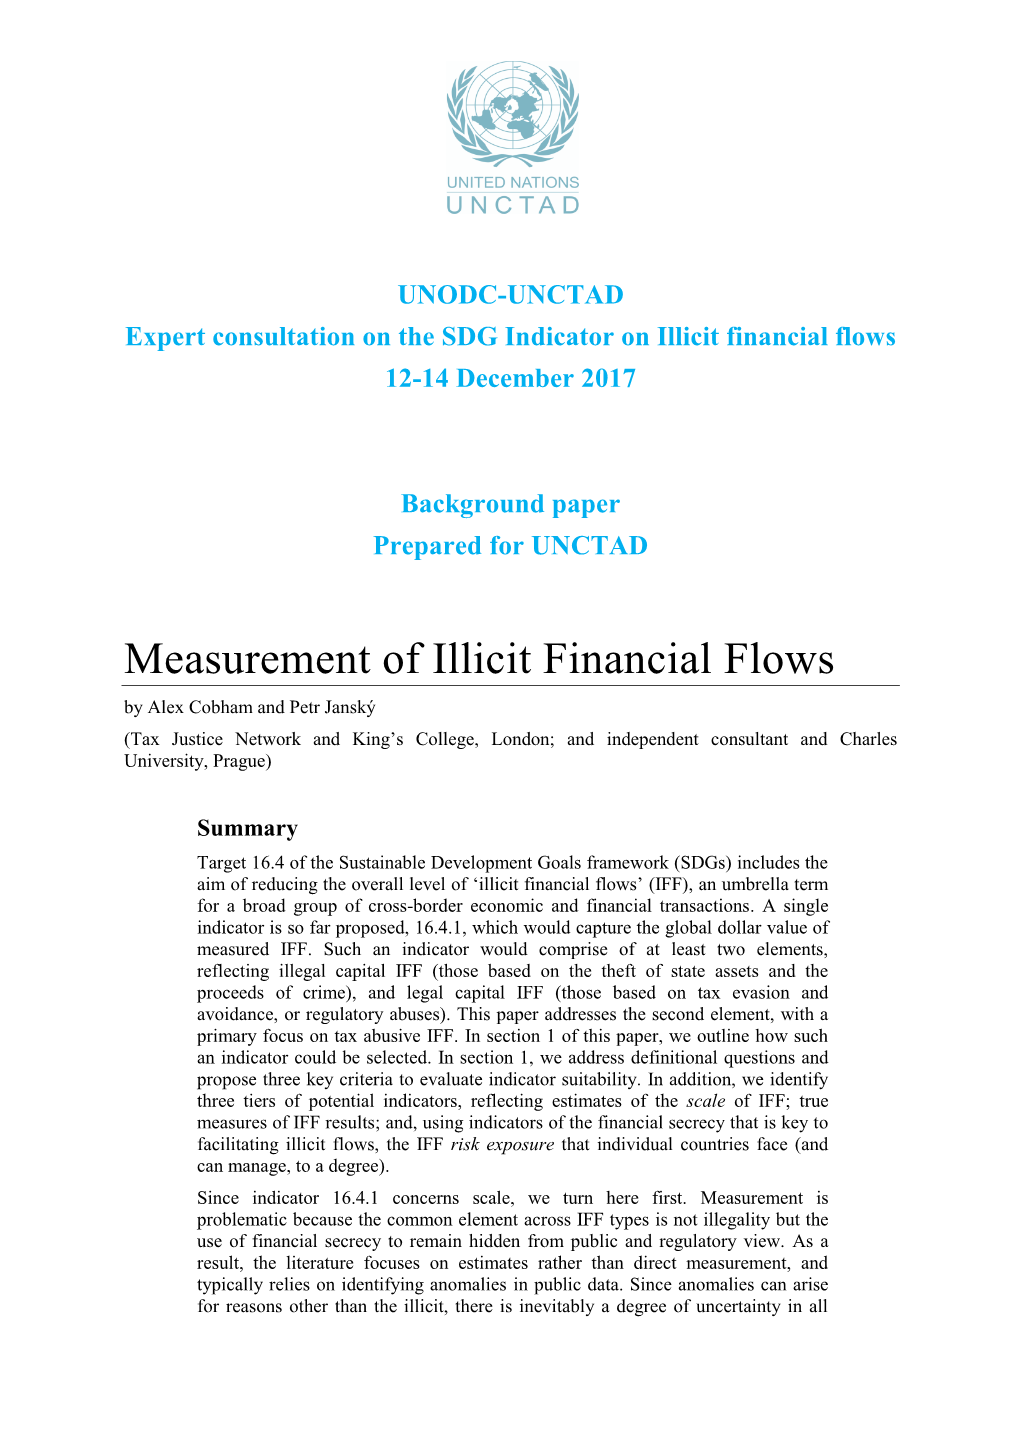 Measurement of Illicit Financial Flows